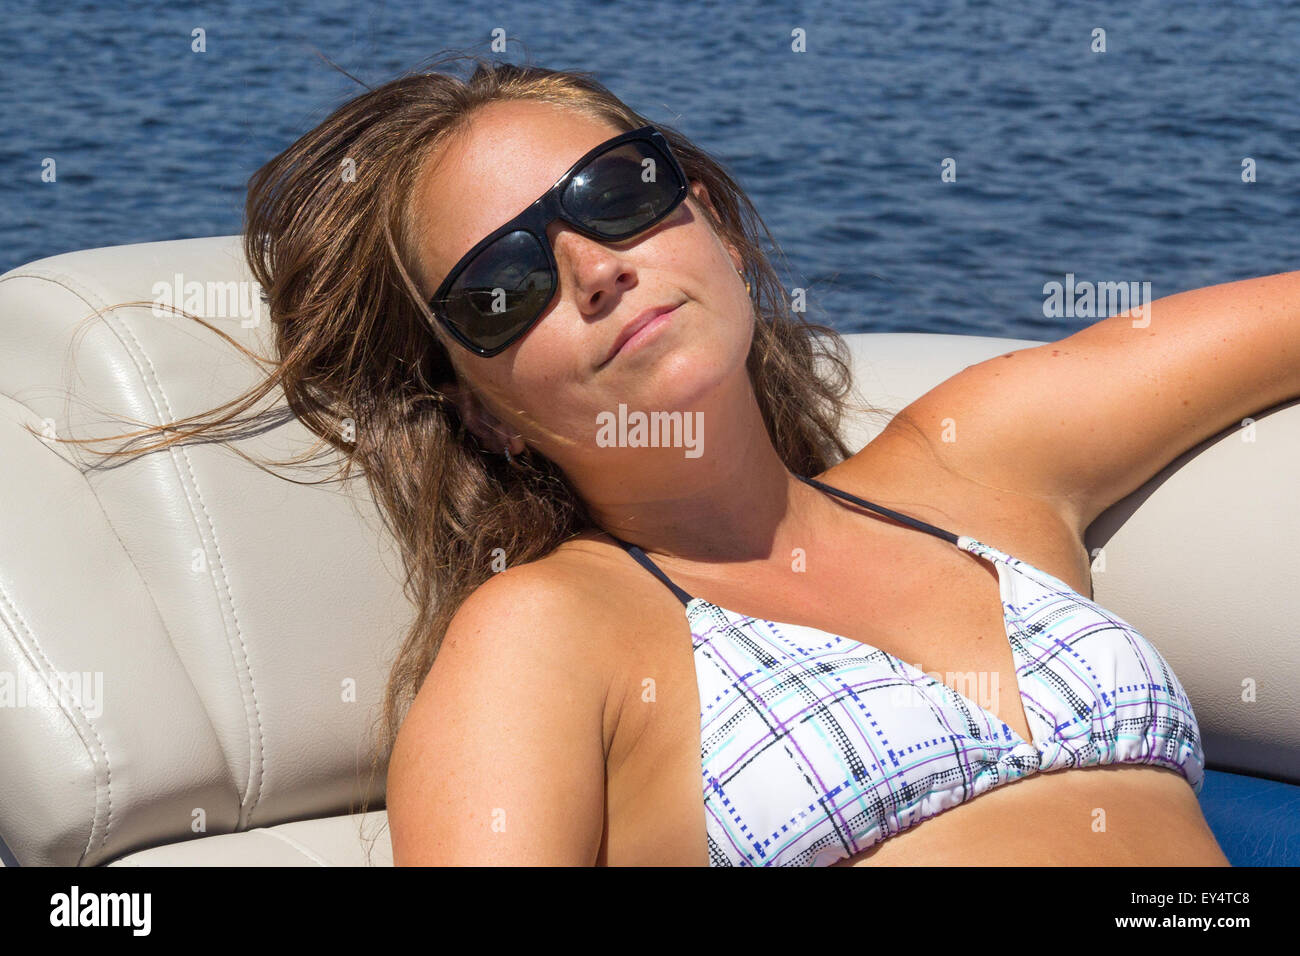 La donna a prendere il sole su una barca Foto Stock